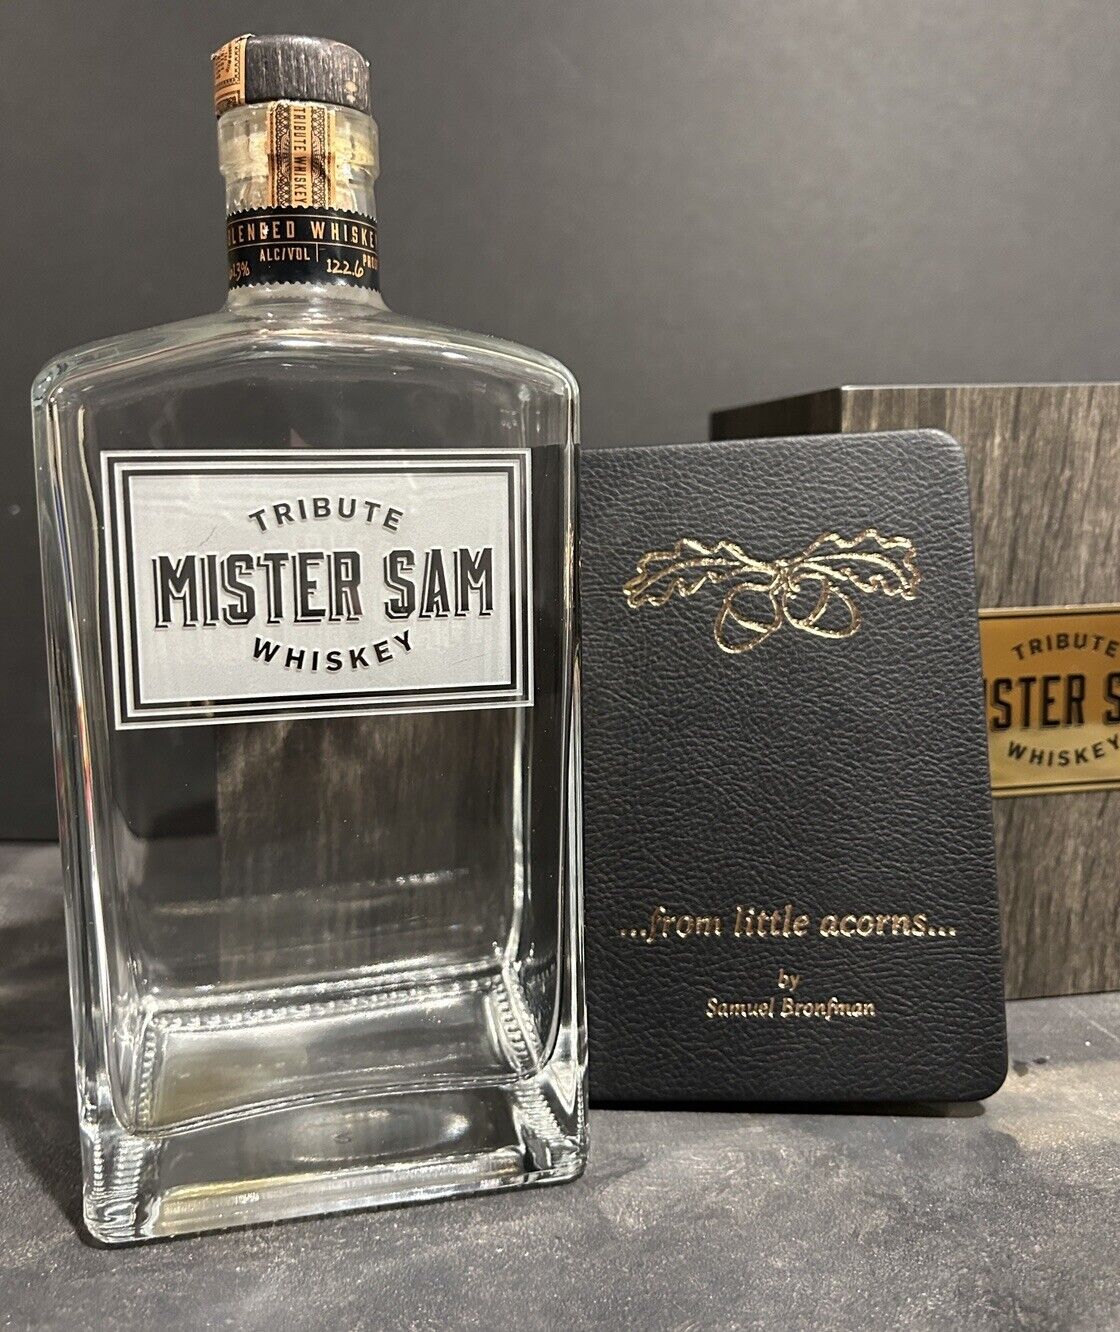 🔥Mister Sam Whiskey Bottle. Empty Bottle + Box. 2021 Batch 2 Release. Rare.